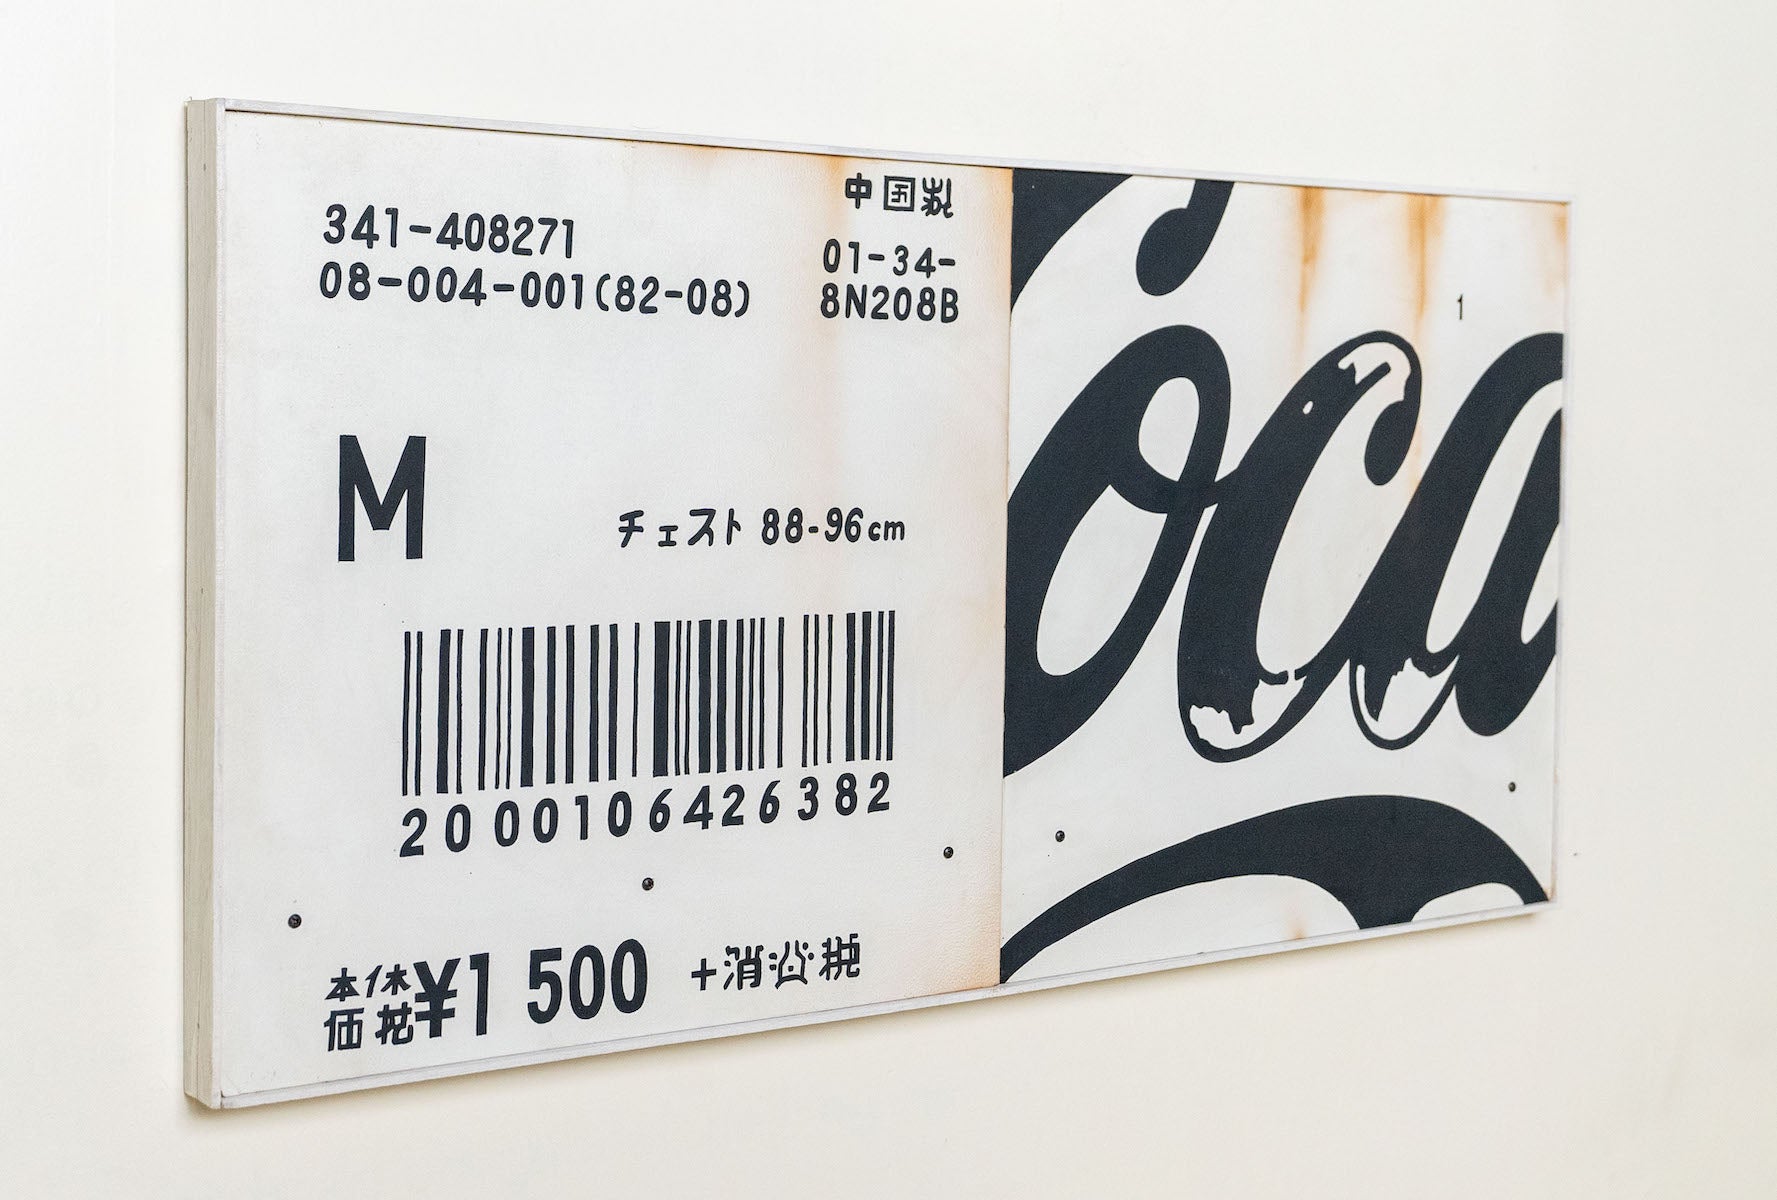 ¥ 1500 by Kunel Gaur